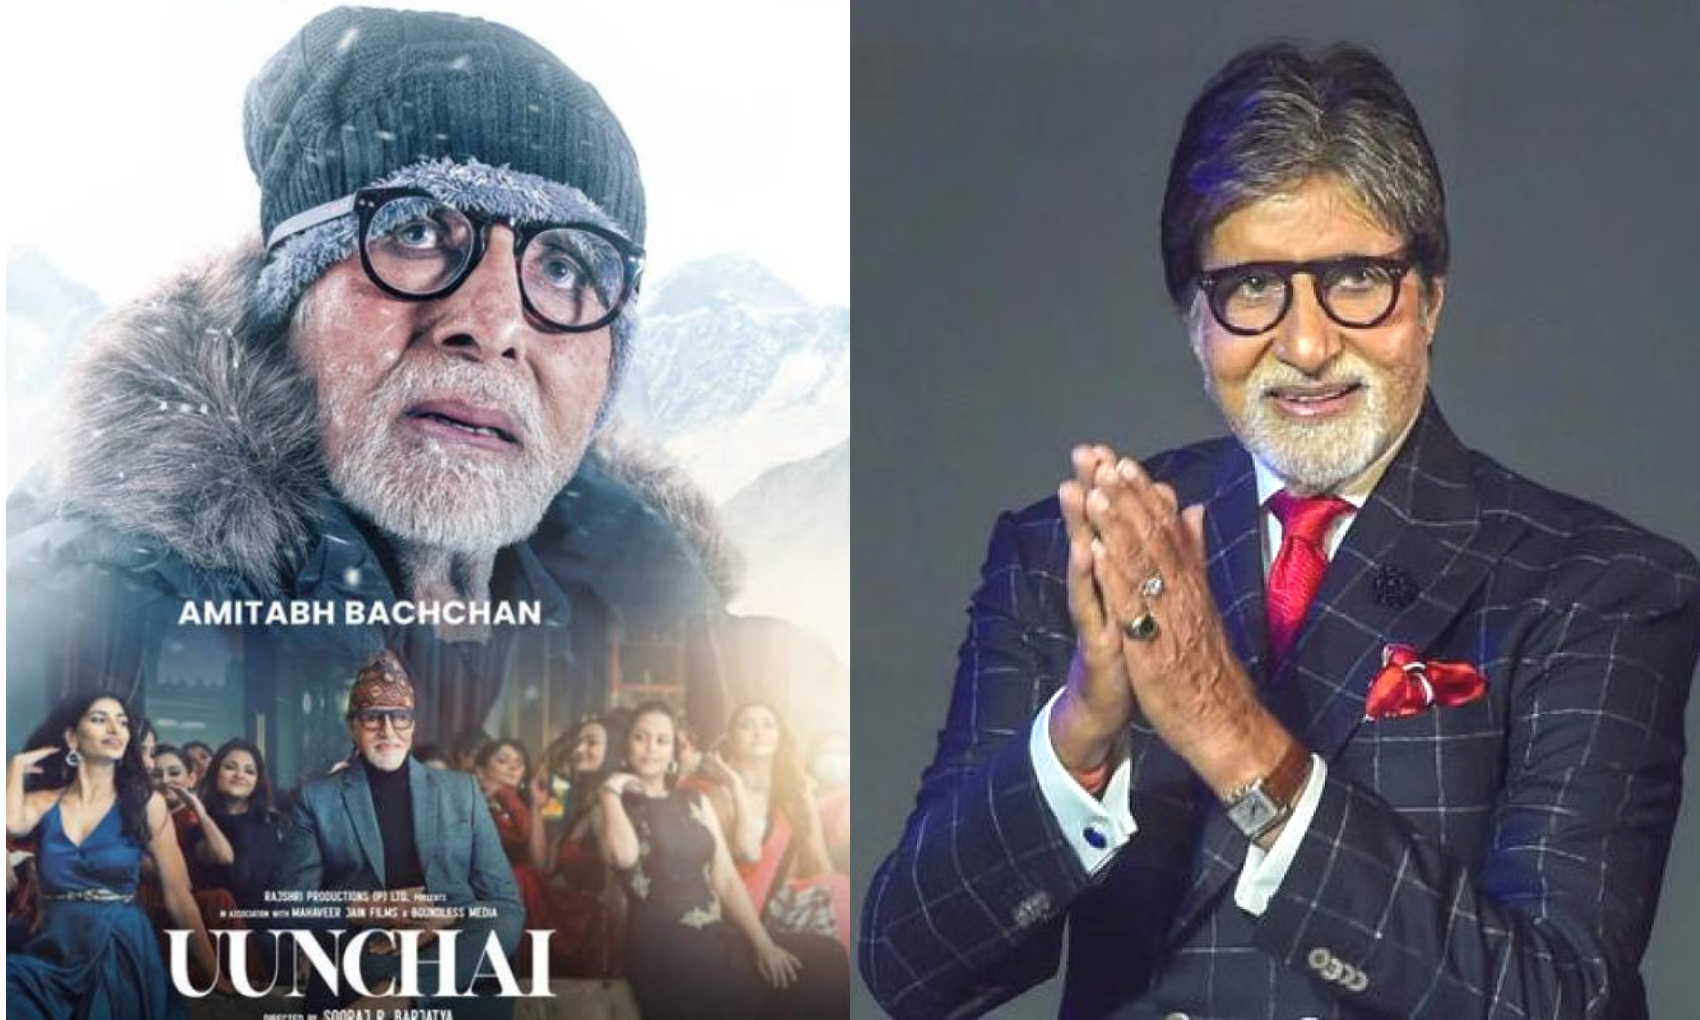 अमिताभ बच्चन को क्या ‘ऊंचाई’ के फ्लॉप होने का सता रहा है डर? हाथ जोड़कर फिल्म देखने का किया अनुरोध!